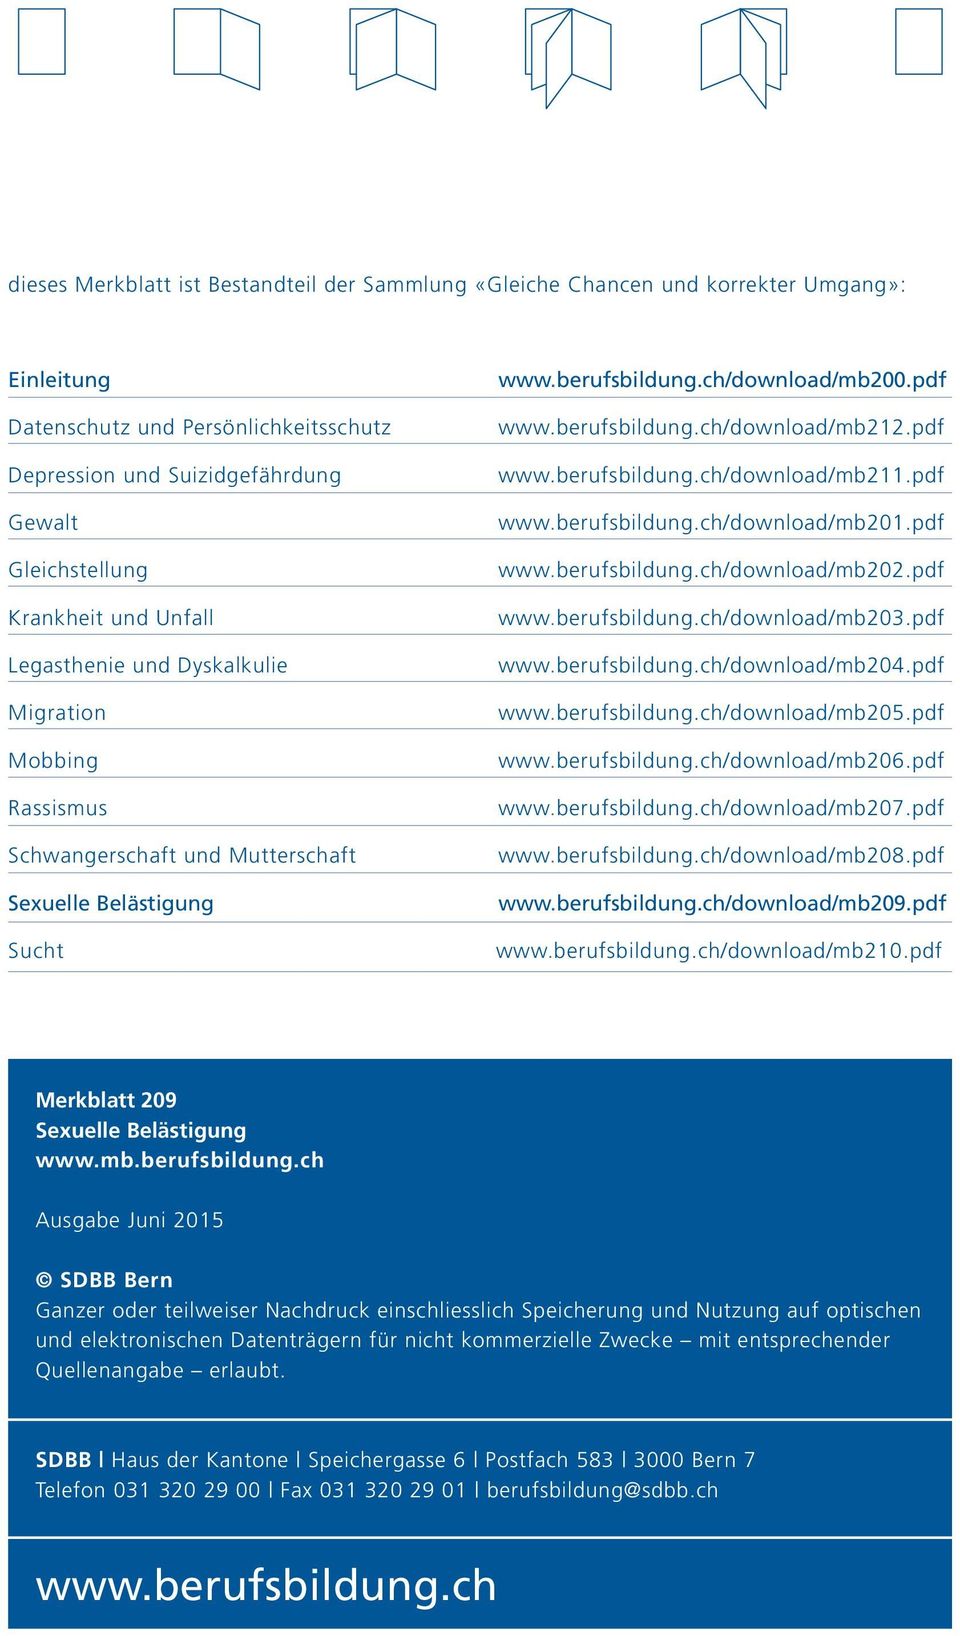 pdf www.berufsbildung.ch/download/mb211.pdf www.berufsbildung.ch/download/mb201.pdf www.berufsbildung.ch/download/mb202.pdf www.berufsbildung.ch/download/mb203.pdf www.berufsbildung.ch/download/mb204.